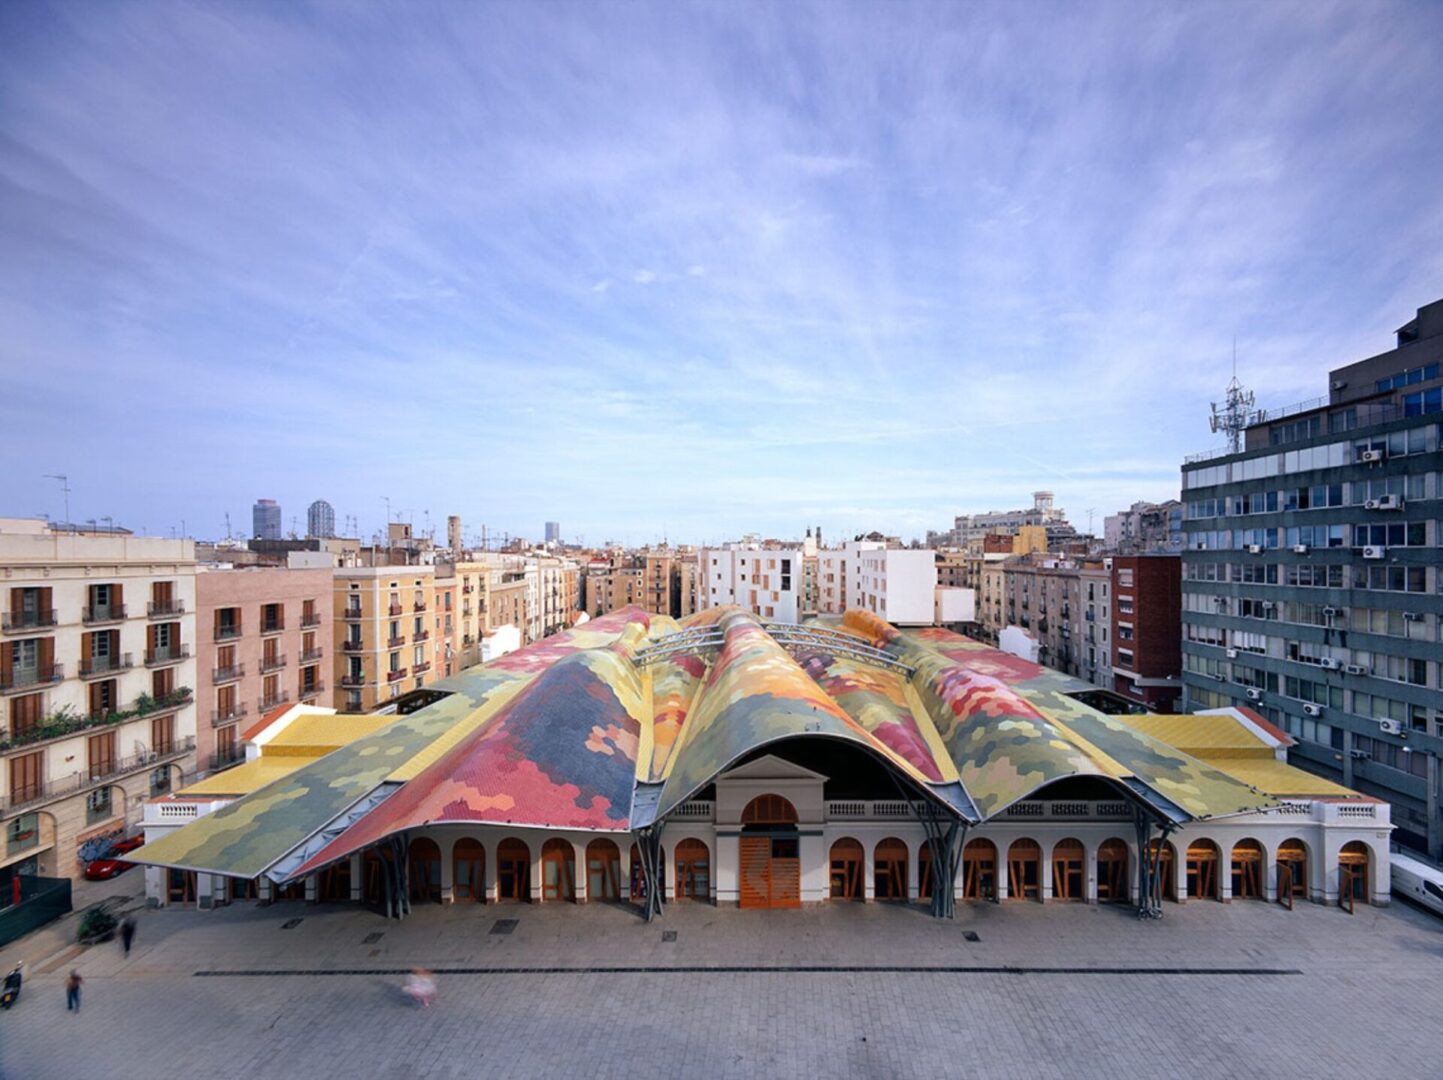 Congresos Tecnológicos en Barcelona: Innovación y Maravillas Arquitectónicas en una Ciudad Cosmopolita.